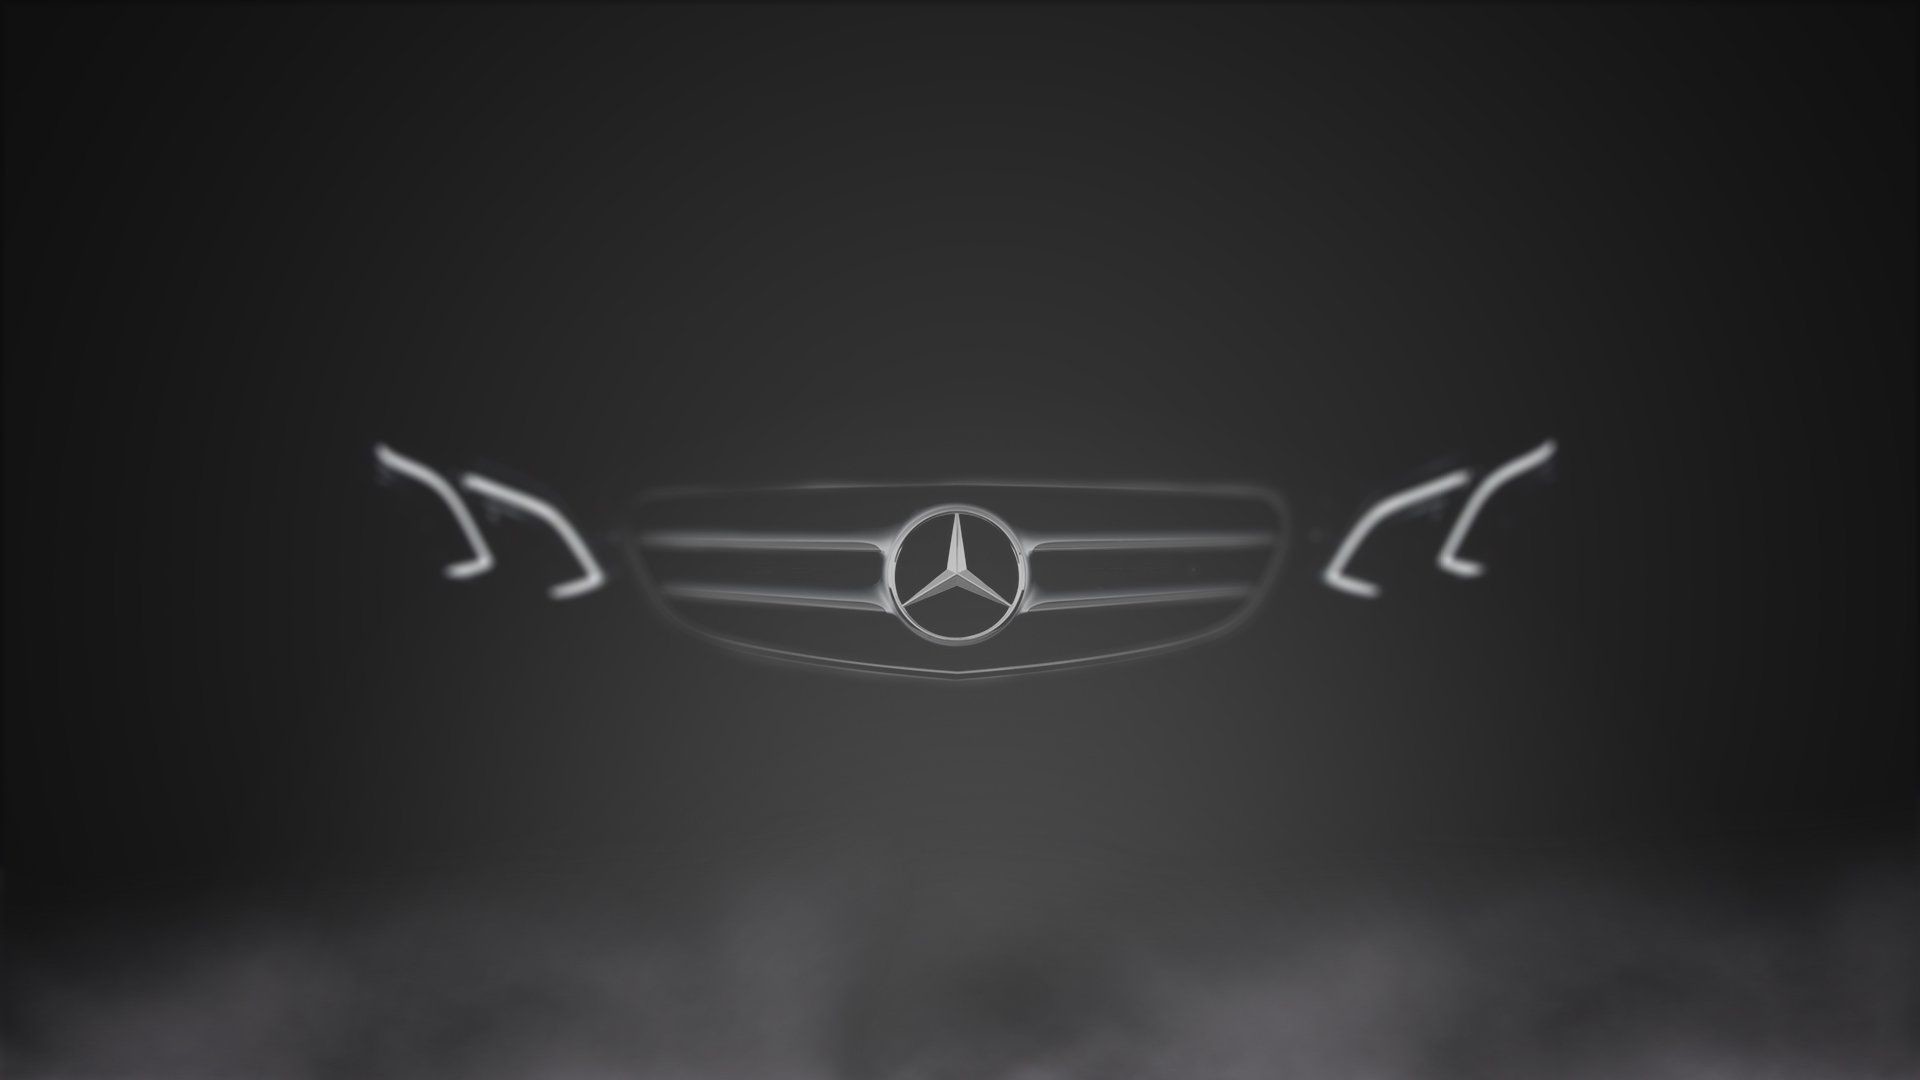 1920x1080 Mercedes Benz Logo Wallpapers Desktop To Download Wallpaper